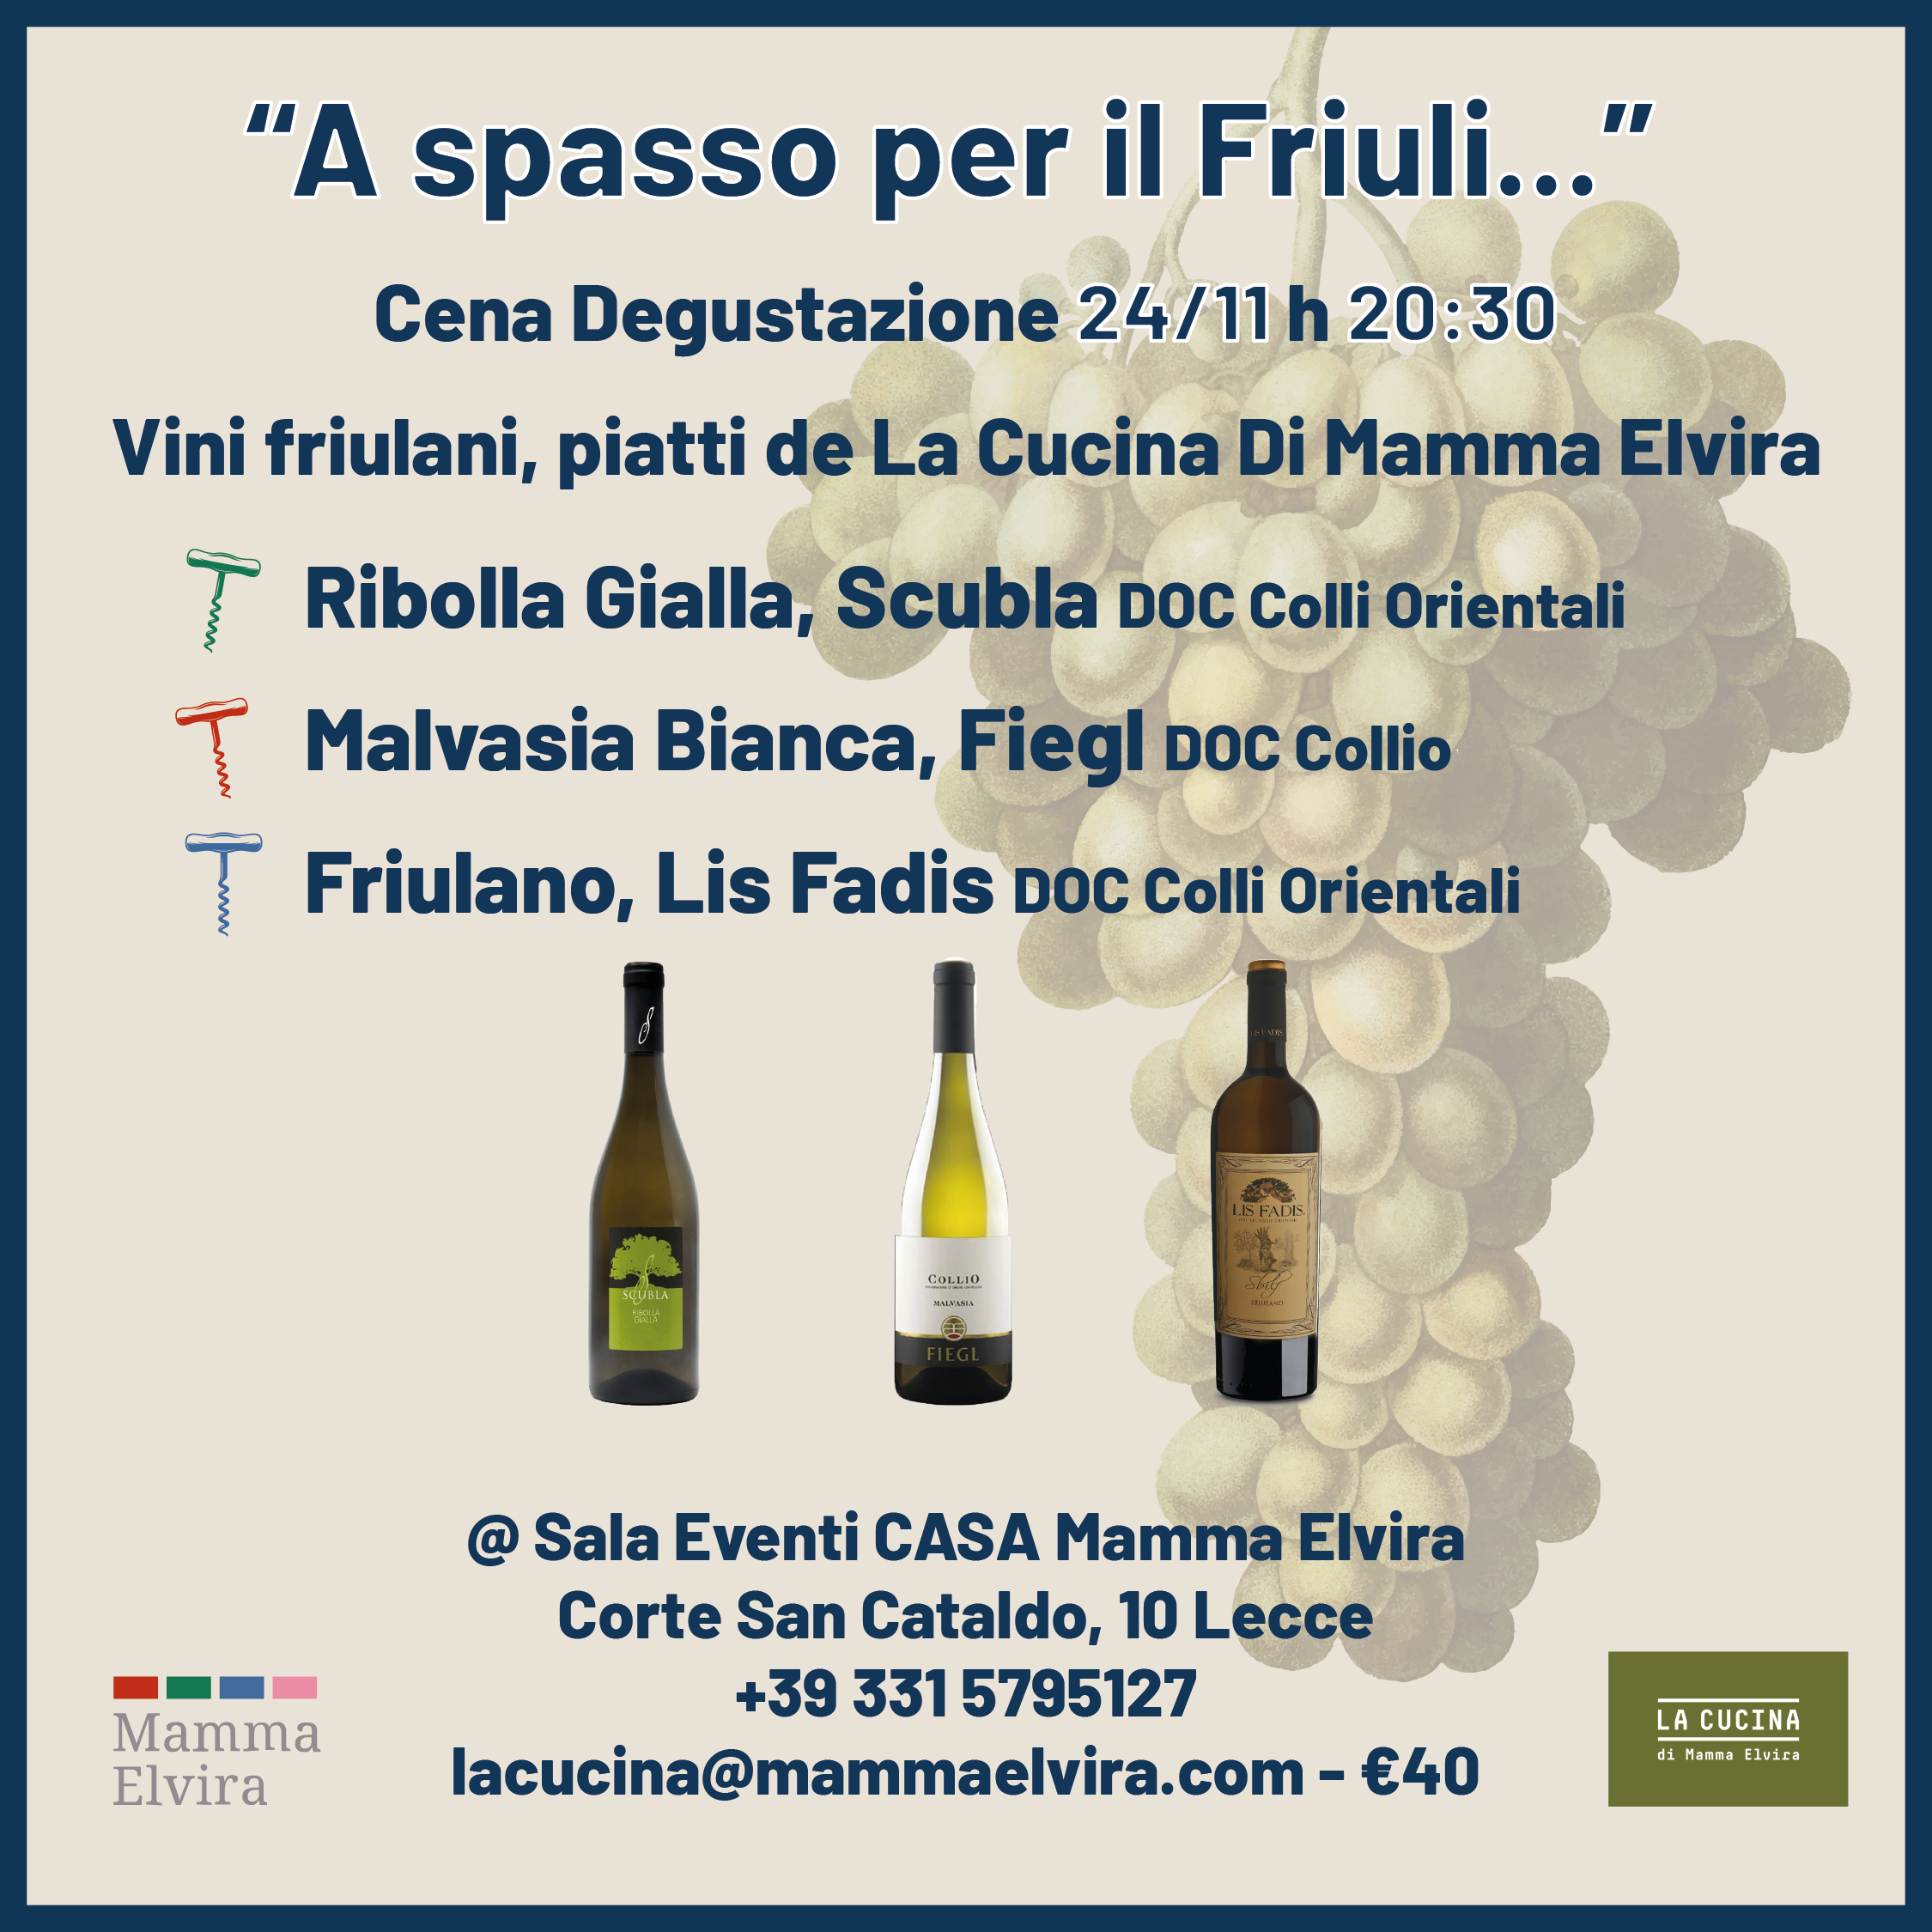 A Spasso Per il Friuli cover image